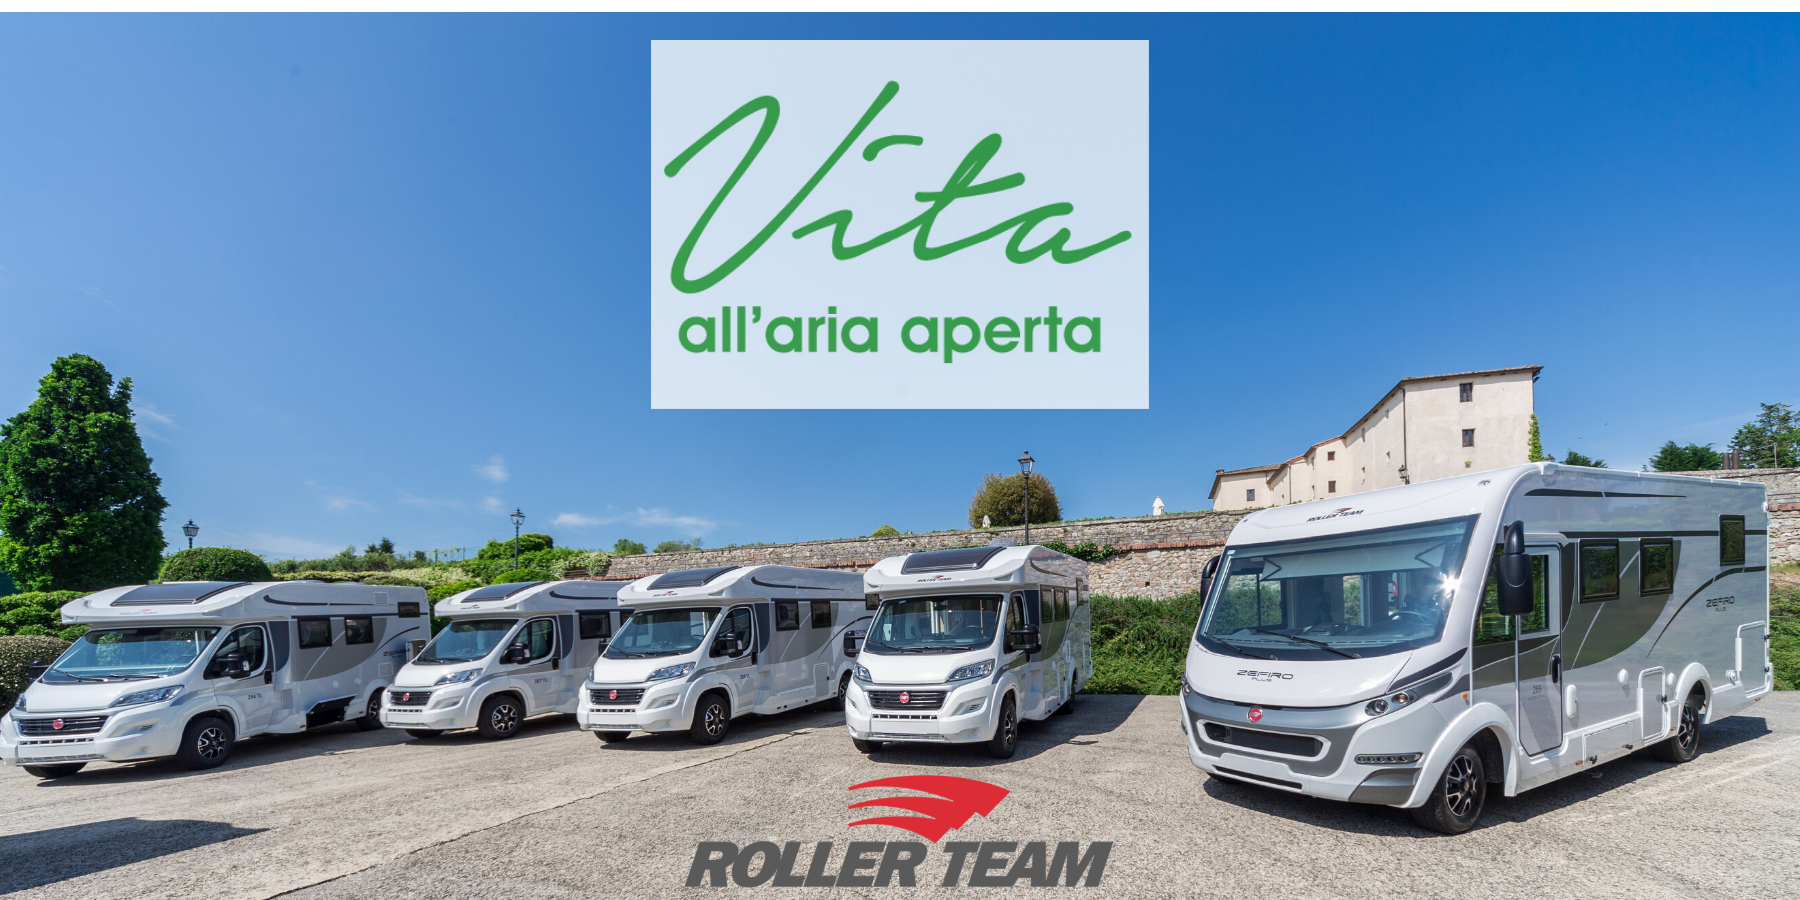 Roller Team a Vita all’Aria Aperta Carrara 2020